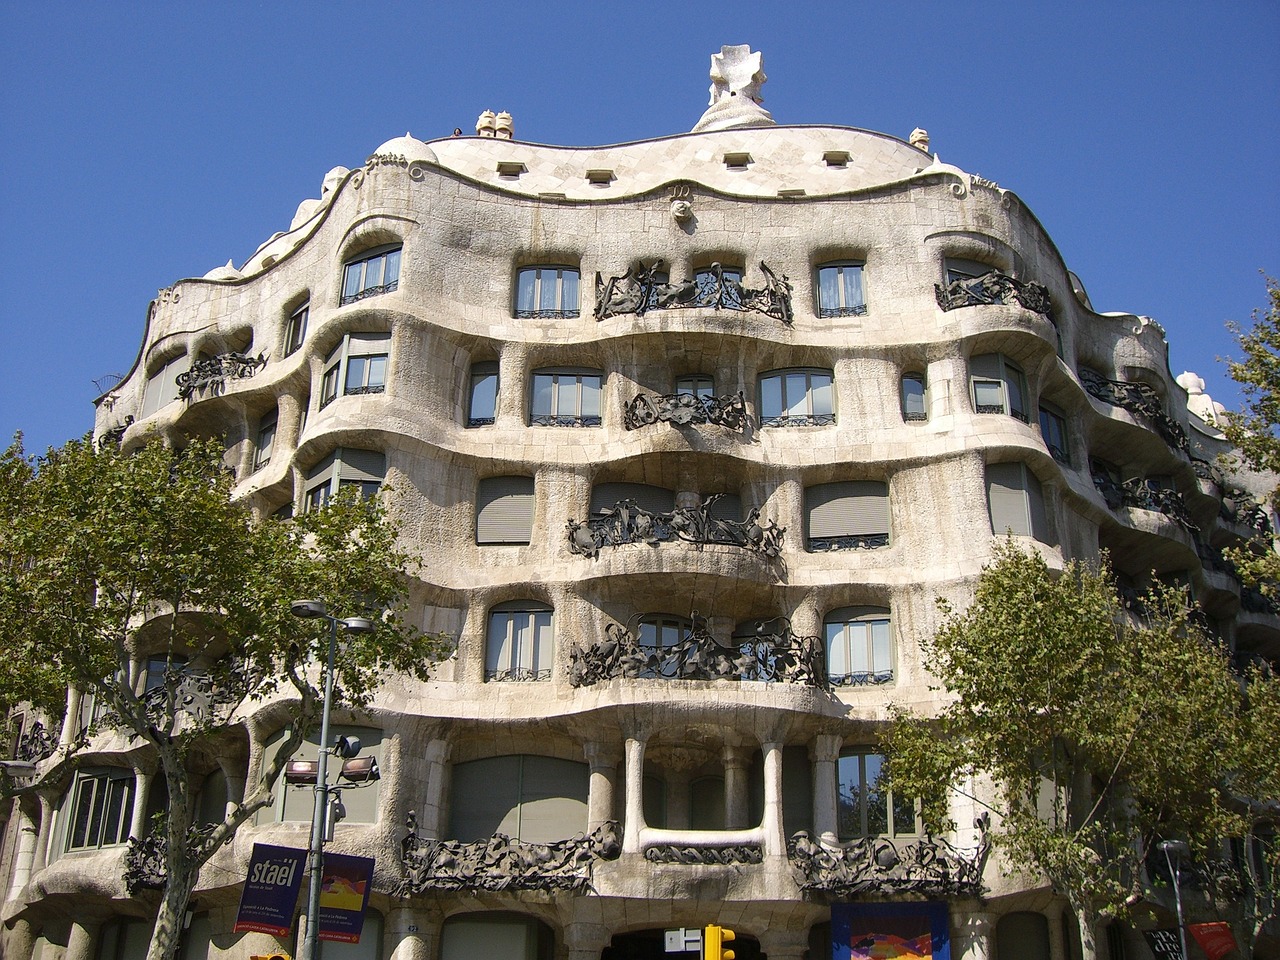 Las obras de Gaudí en Barcelona: Una Mirada a la Arquitectura Modernista